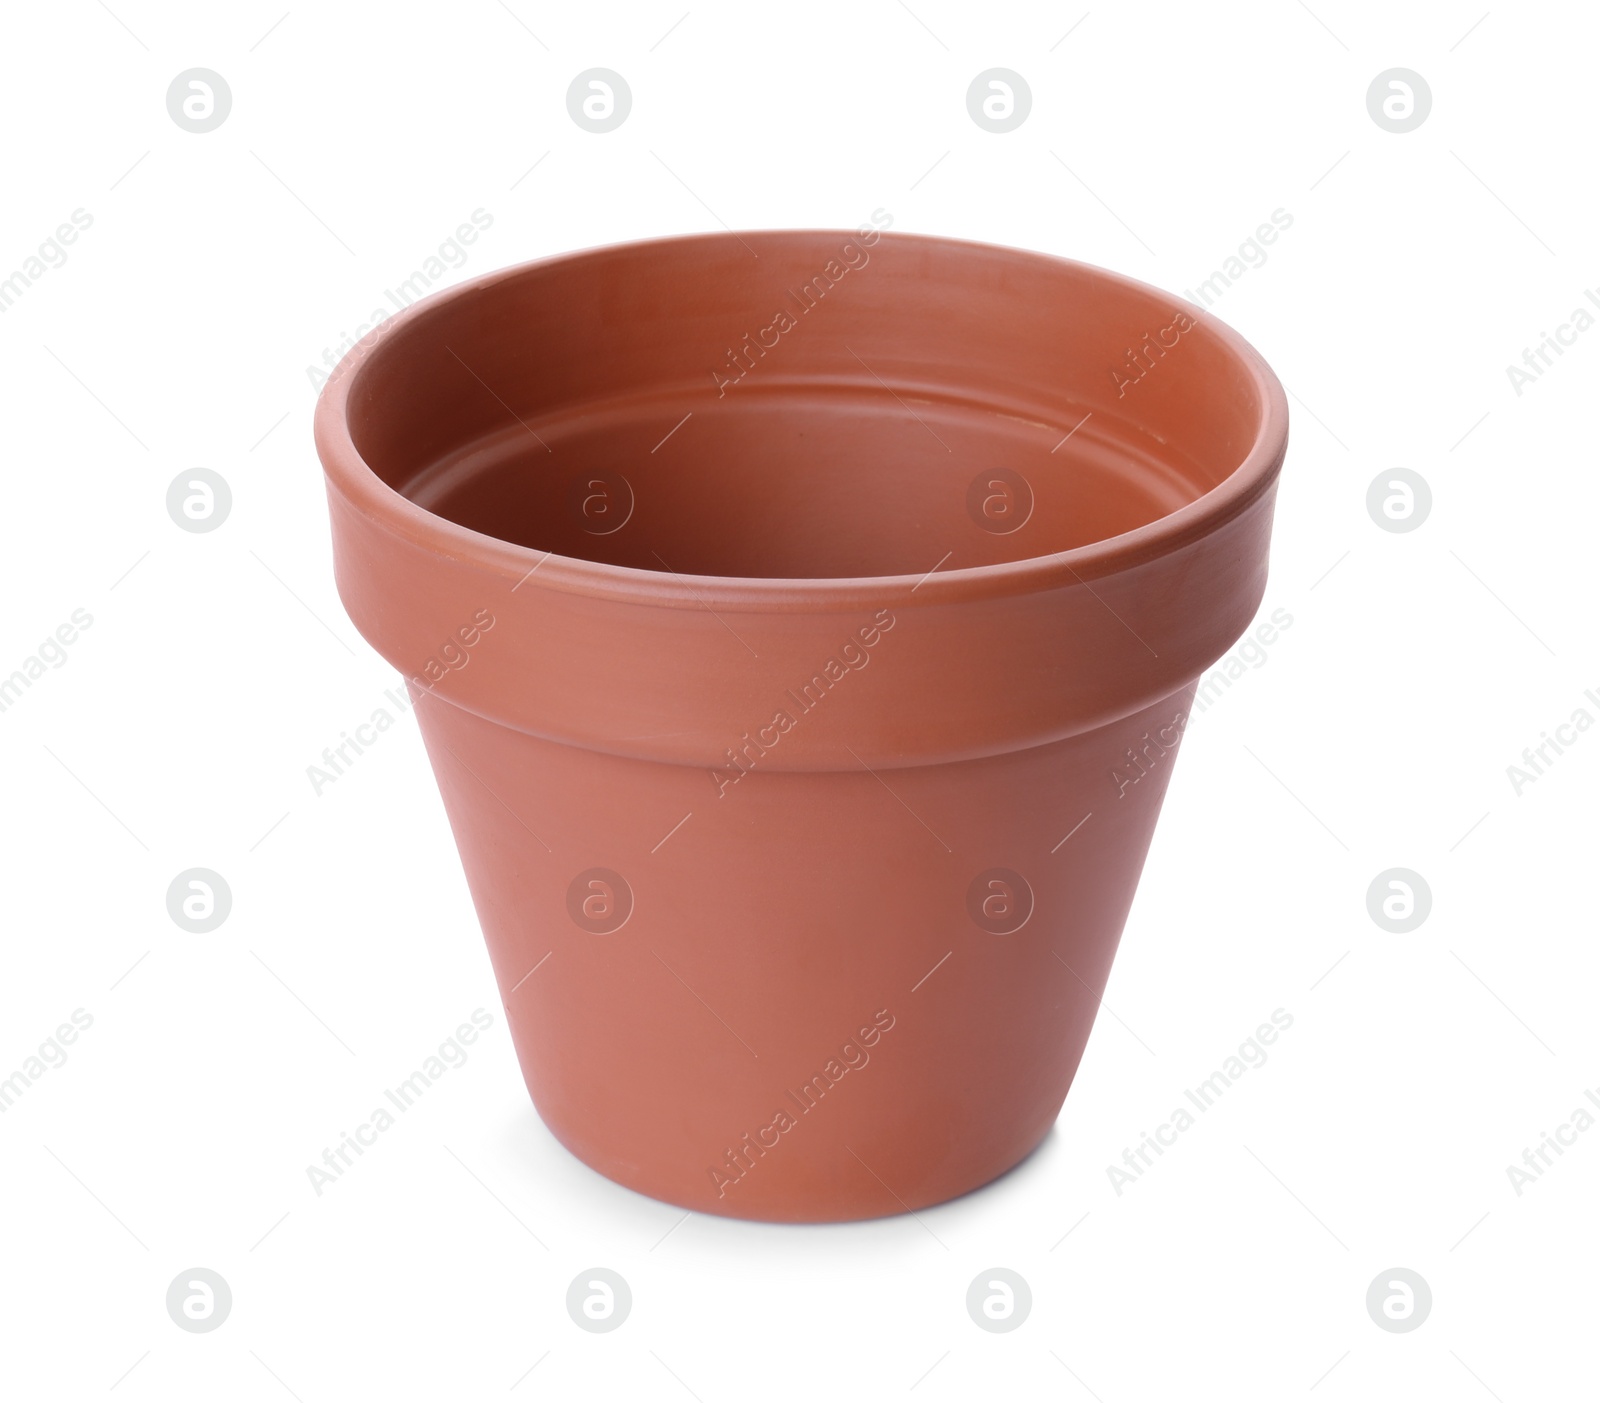 Photo of Stylish terracotta flower pot isolated on white